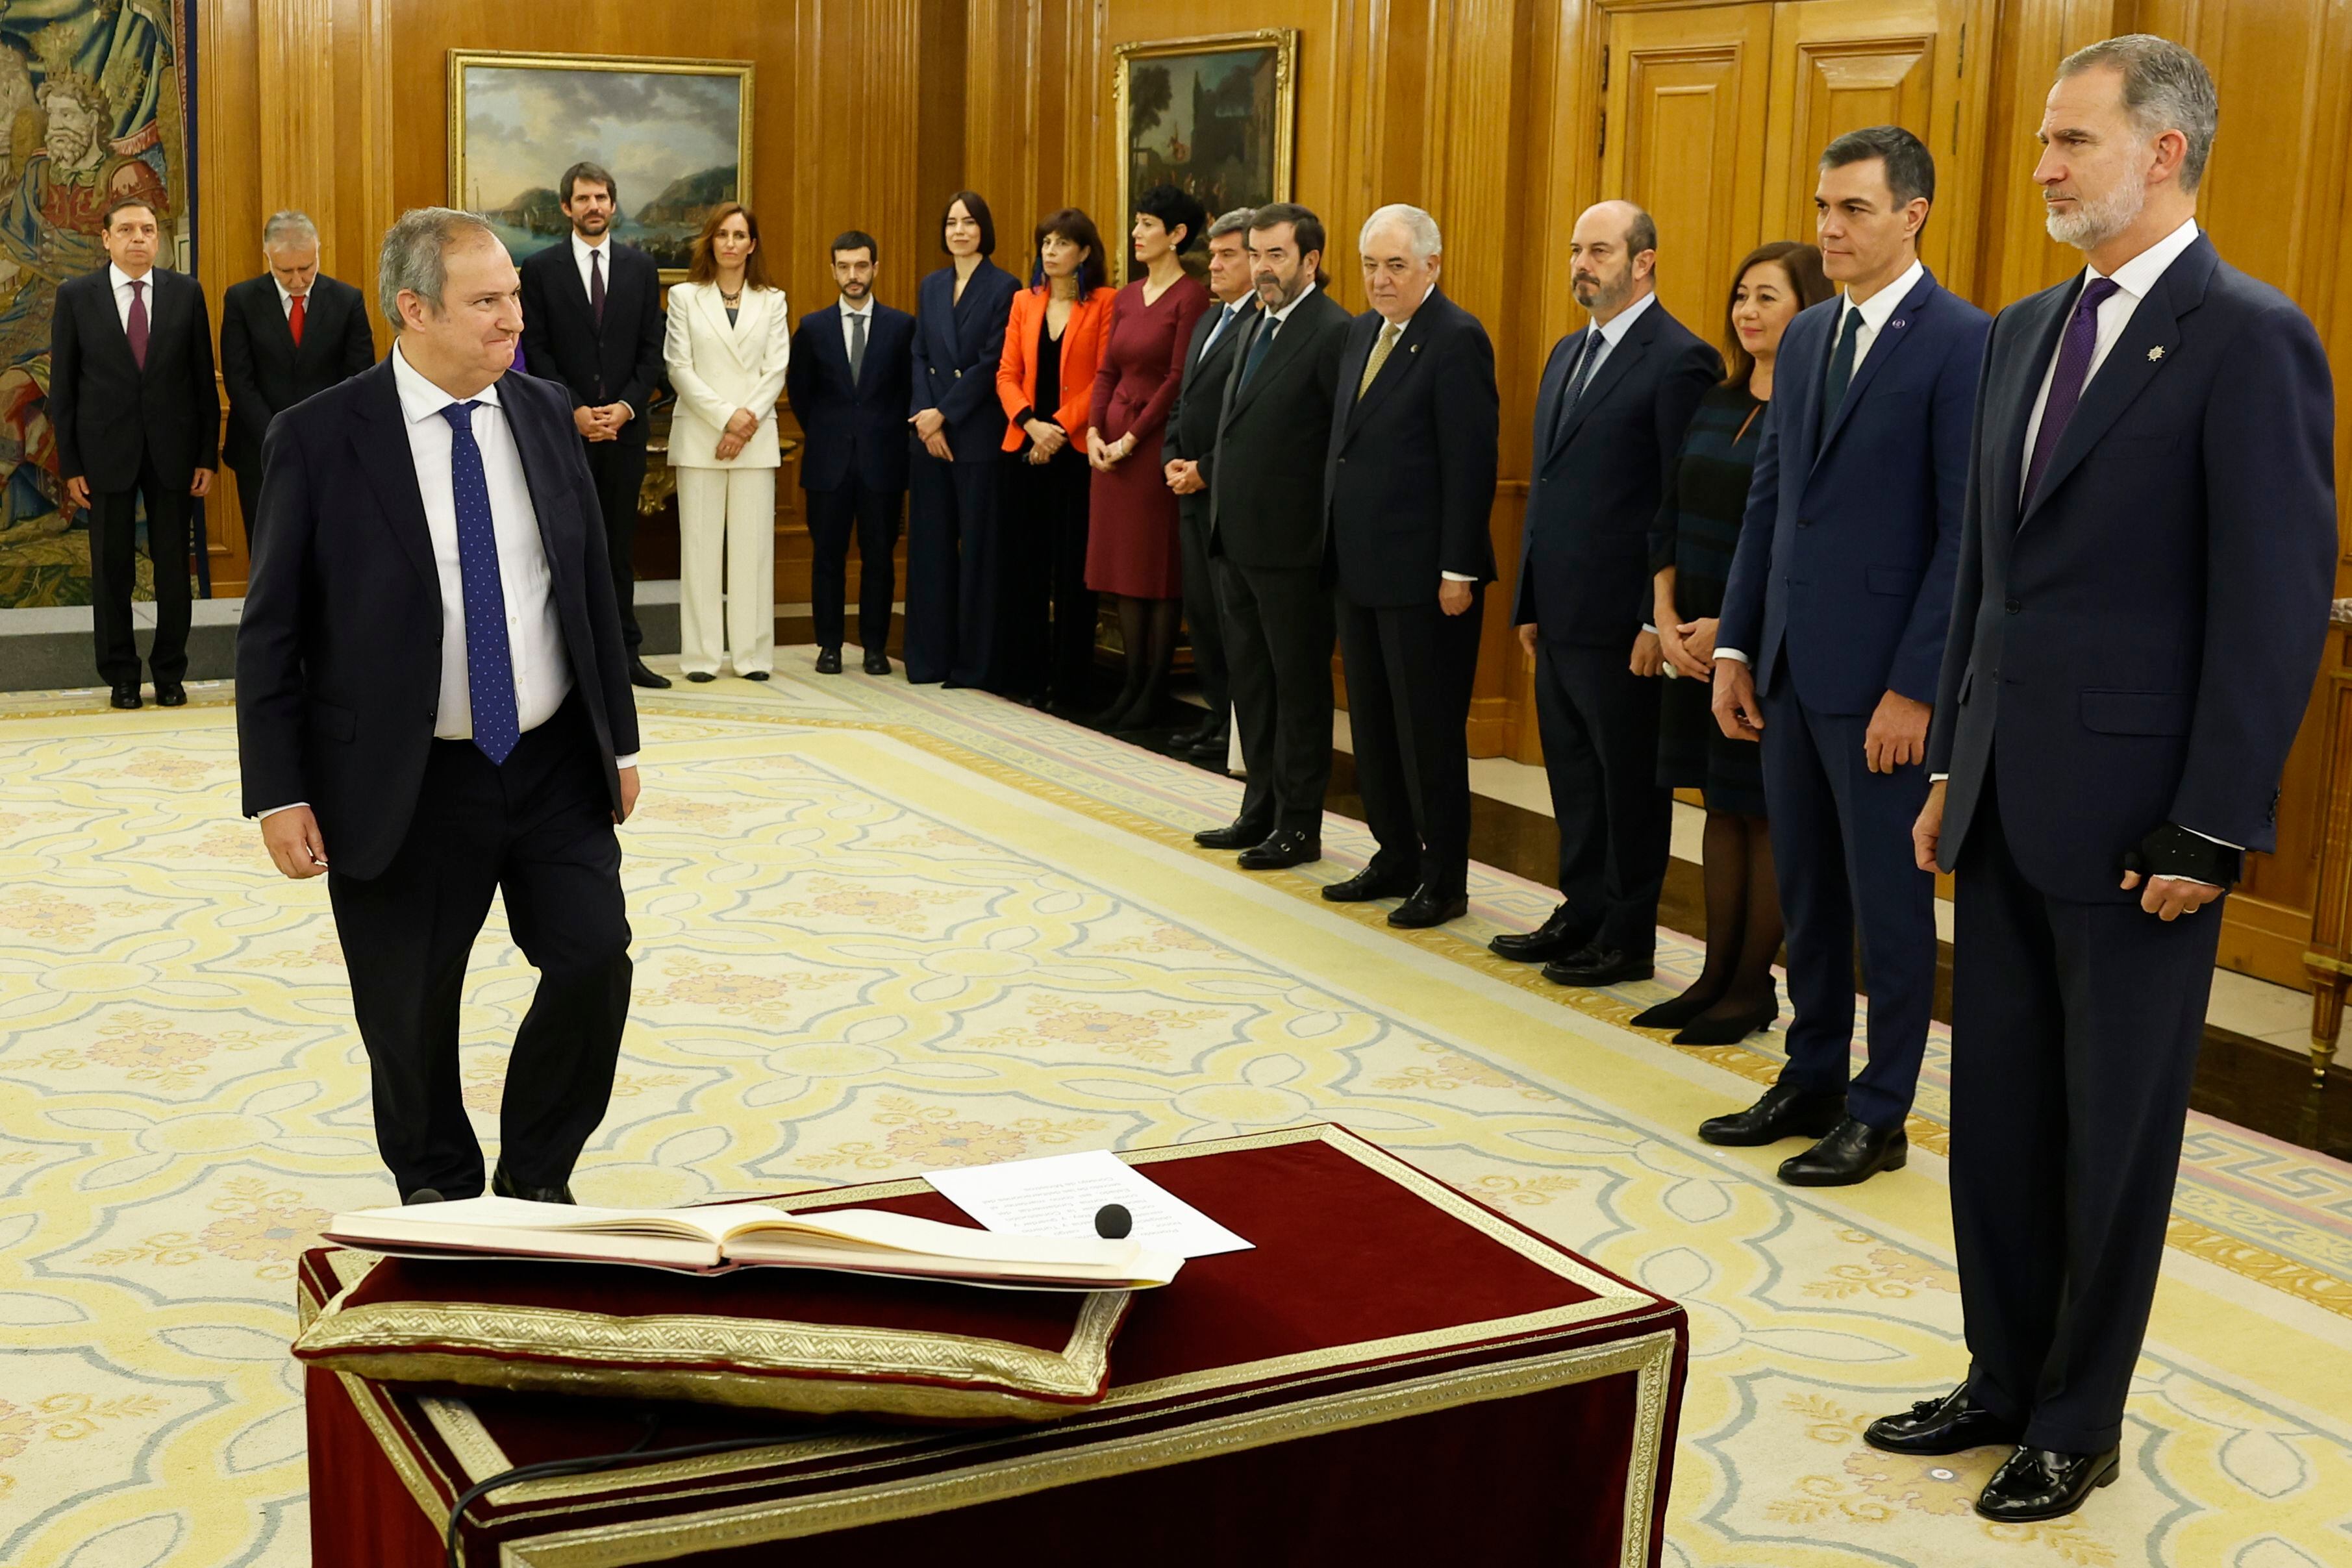 El nuevo ministro de Industria, Jordi Hereu, momentos antes de prometer el cargo ante el Rey.